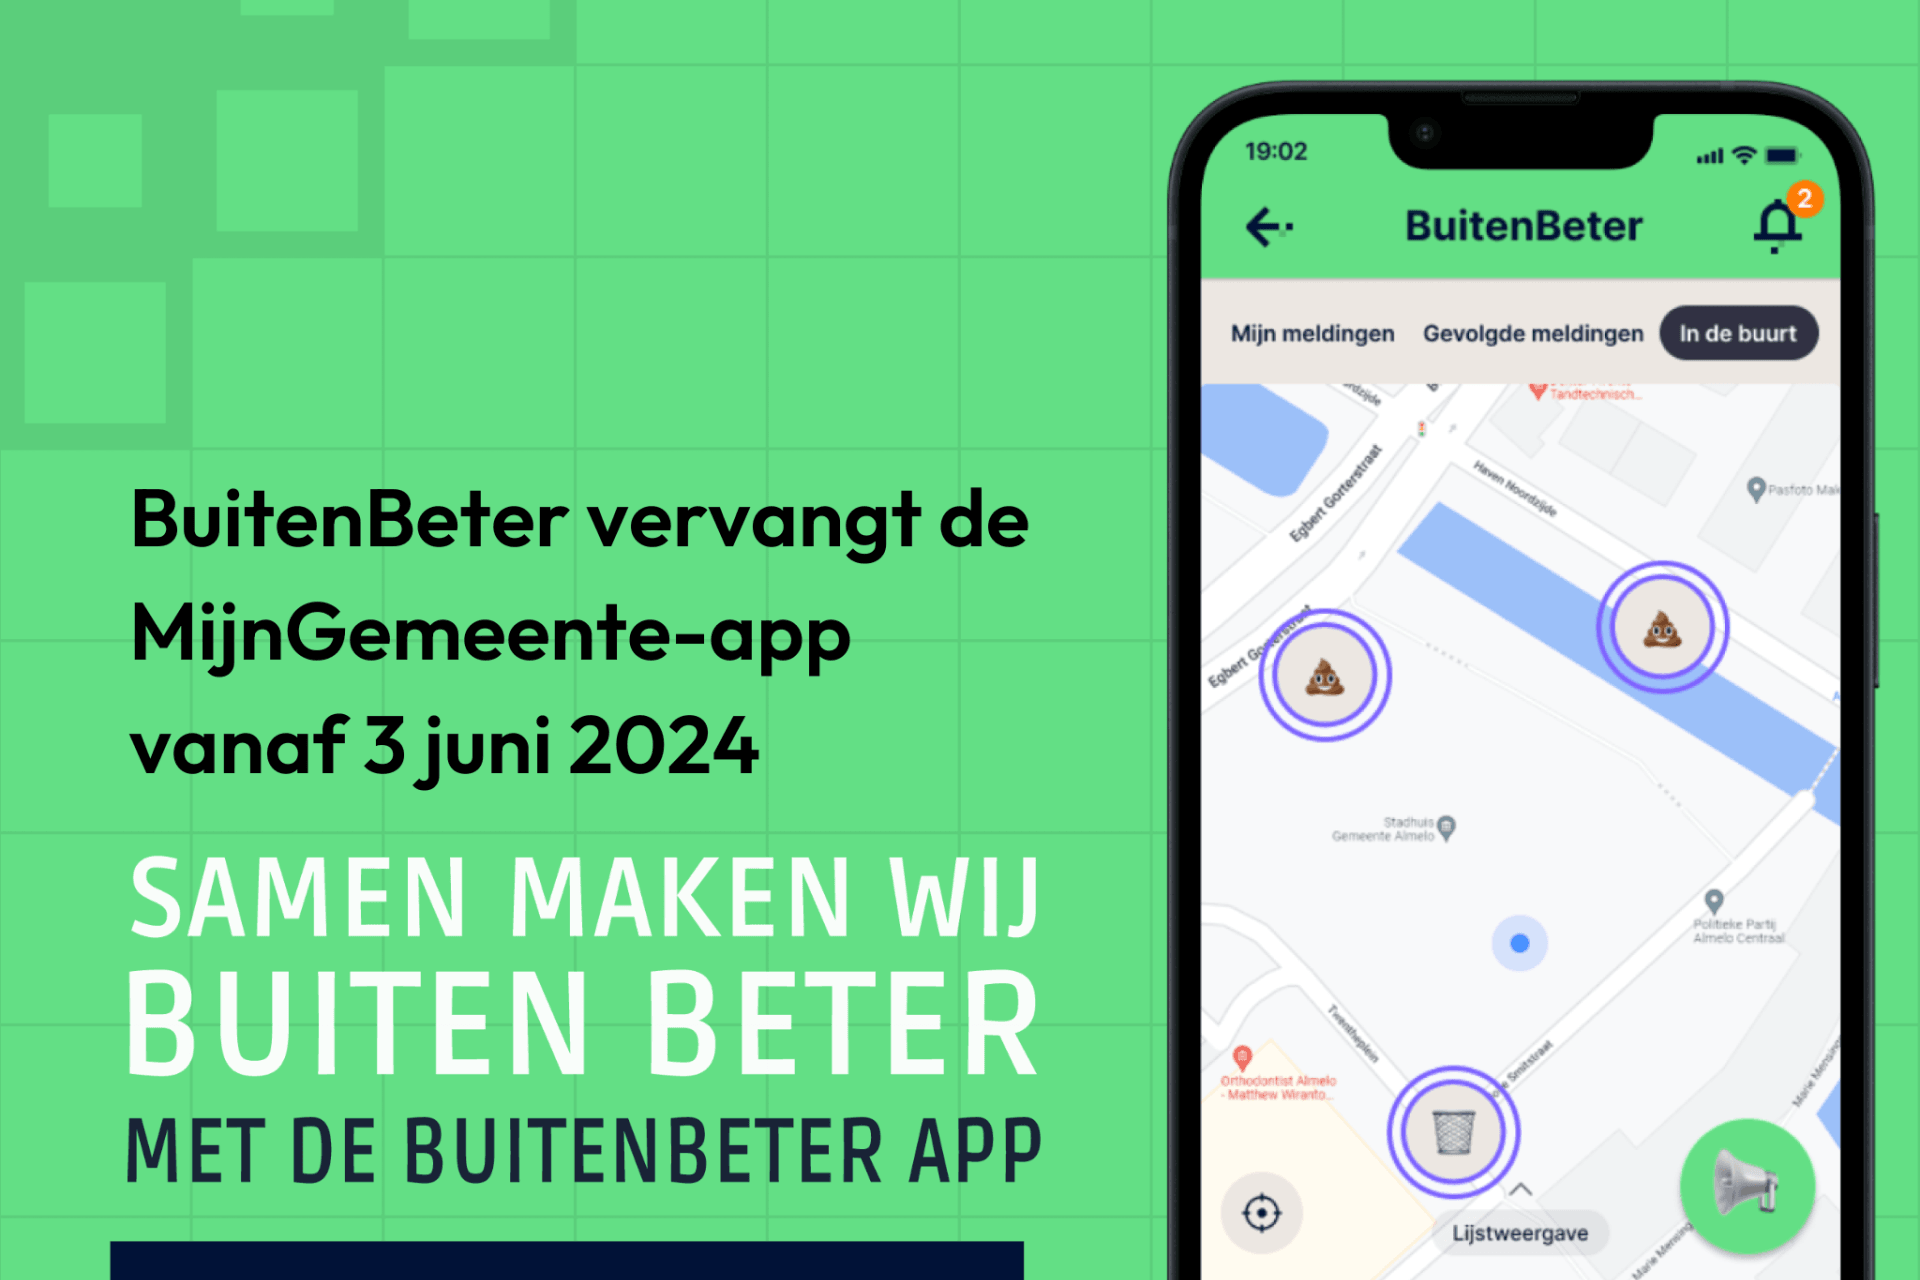 Weergave van een telefoon scherm met de BuitenBeter-app daarop. Hierbij de volgende tekst: BuitenBeter vervangt de MijnGemeente-app vanaf 3 juni 2024. Samen maken wij Buiten Beter met de BuitenBeter app. Download BuitenBeter.